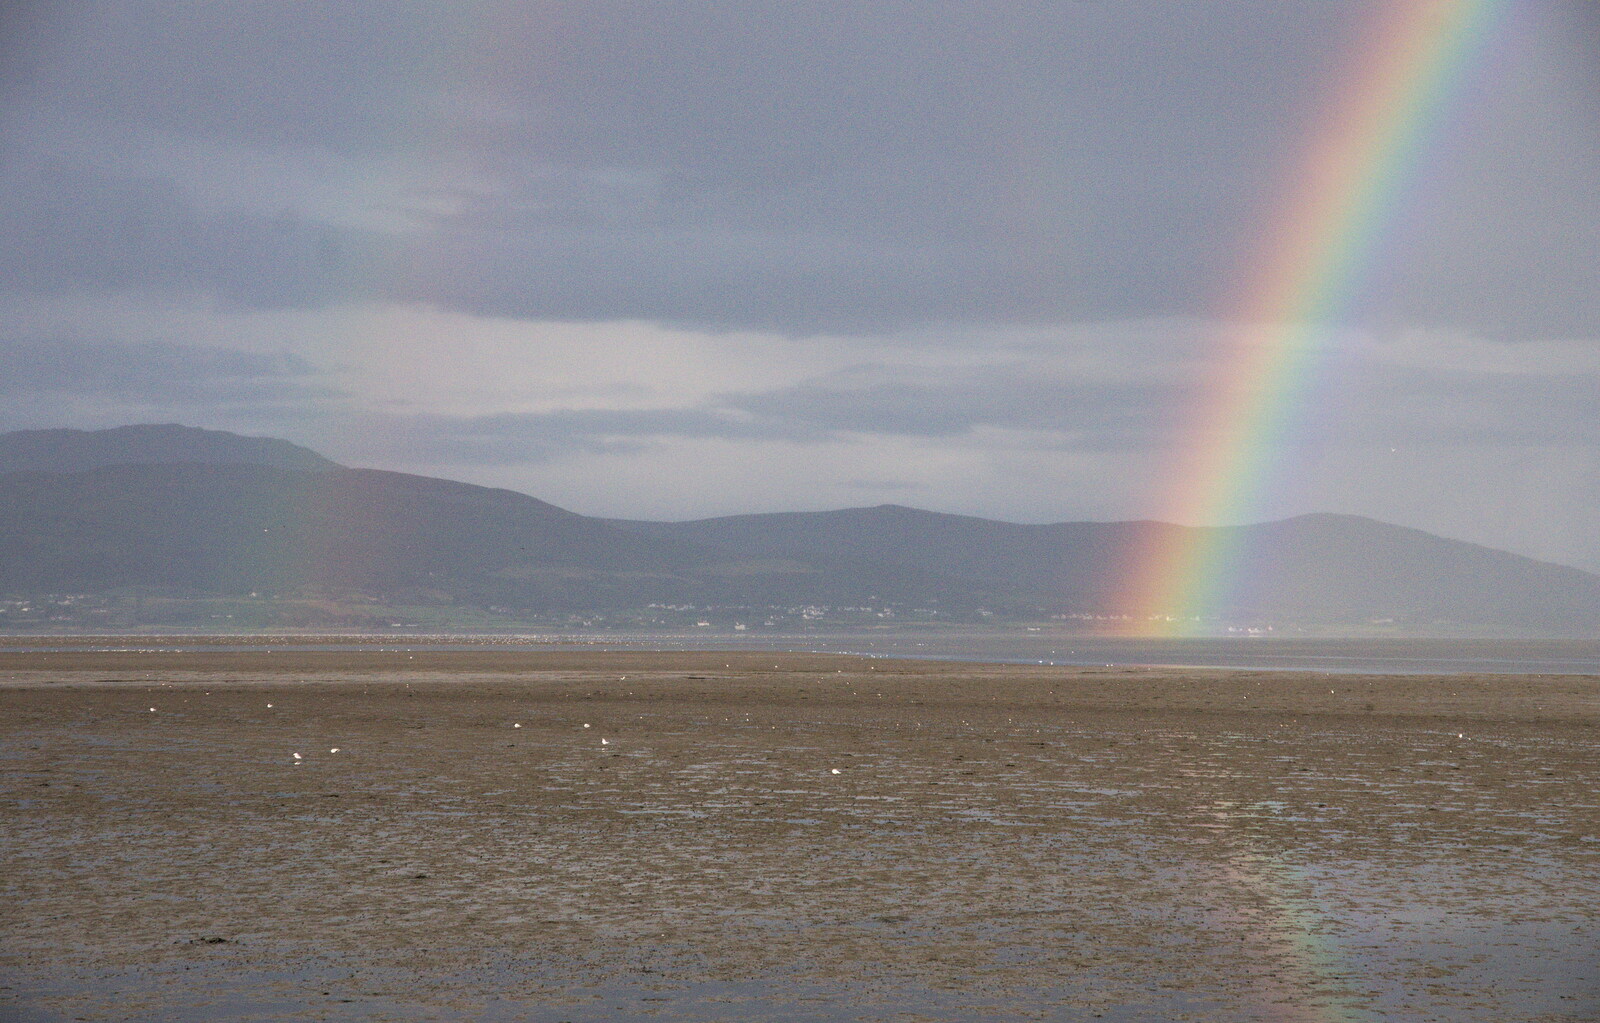 At the end of the rainbow, with a faint double from The Fleadh Cheoil na hÉireann, Droichead Átha, Co. Louth, Ireland - 13th August 2019